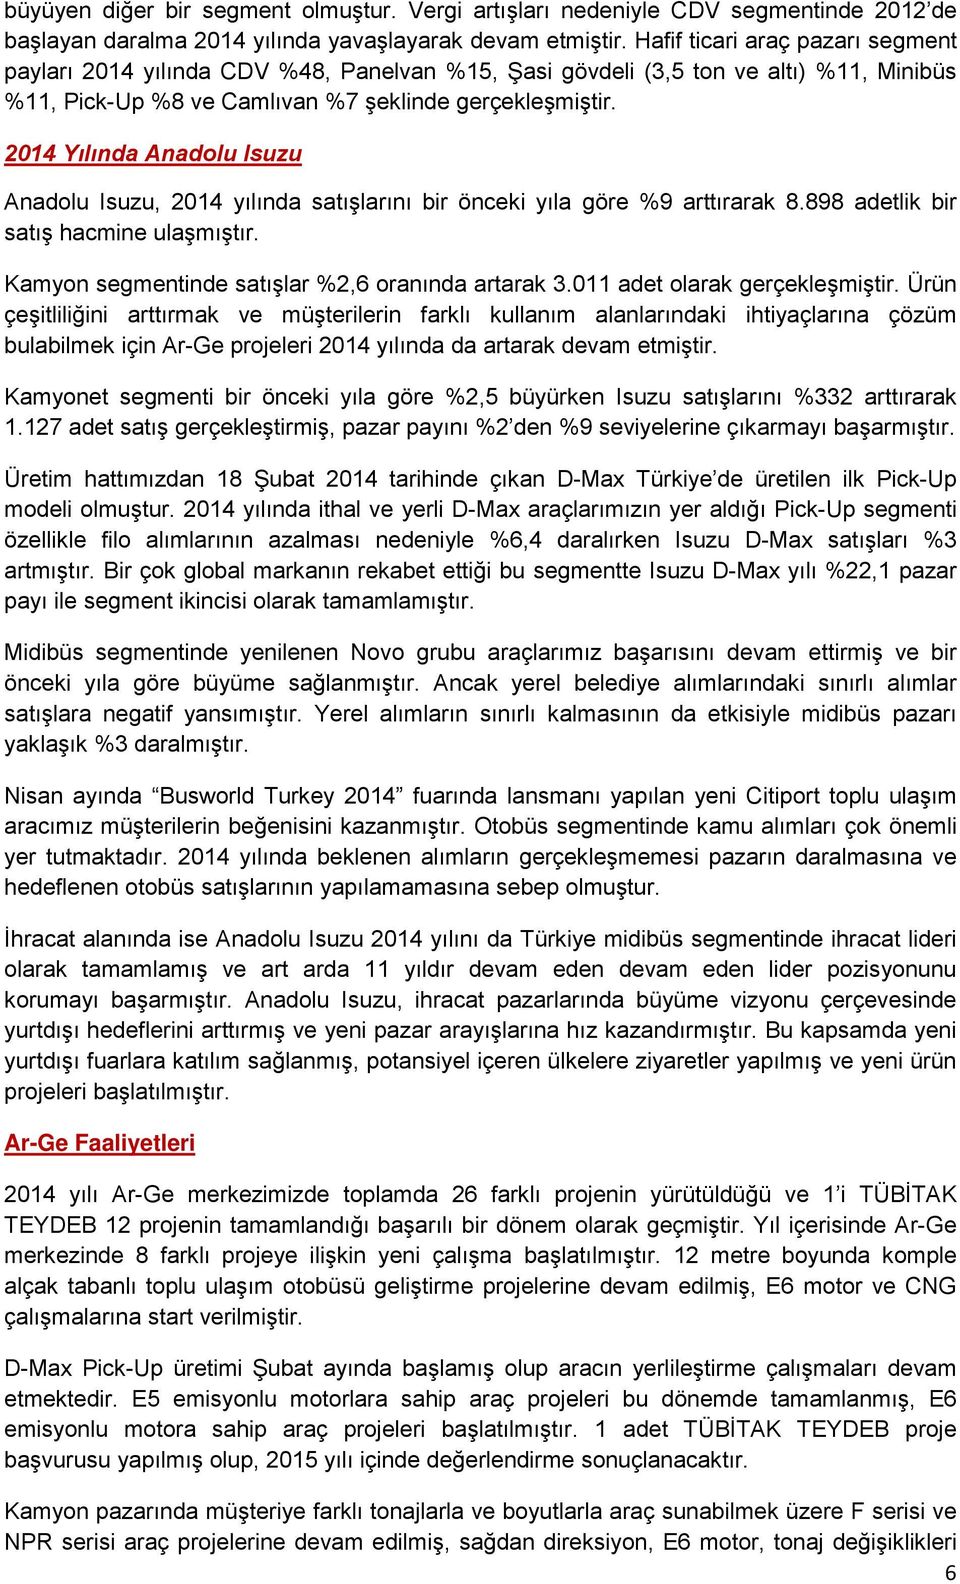 2014 Yılında Anadolu Isuzu Anadolu Isuzu, 2014 yılında satışlarını bir önceki yıla göre %9 arttırarak 8.898 adetlik bir satış hacmine ulaşmıştır. Kamyon segmentinde satışlar %2,6 oranında artarak 3.